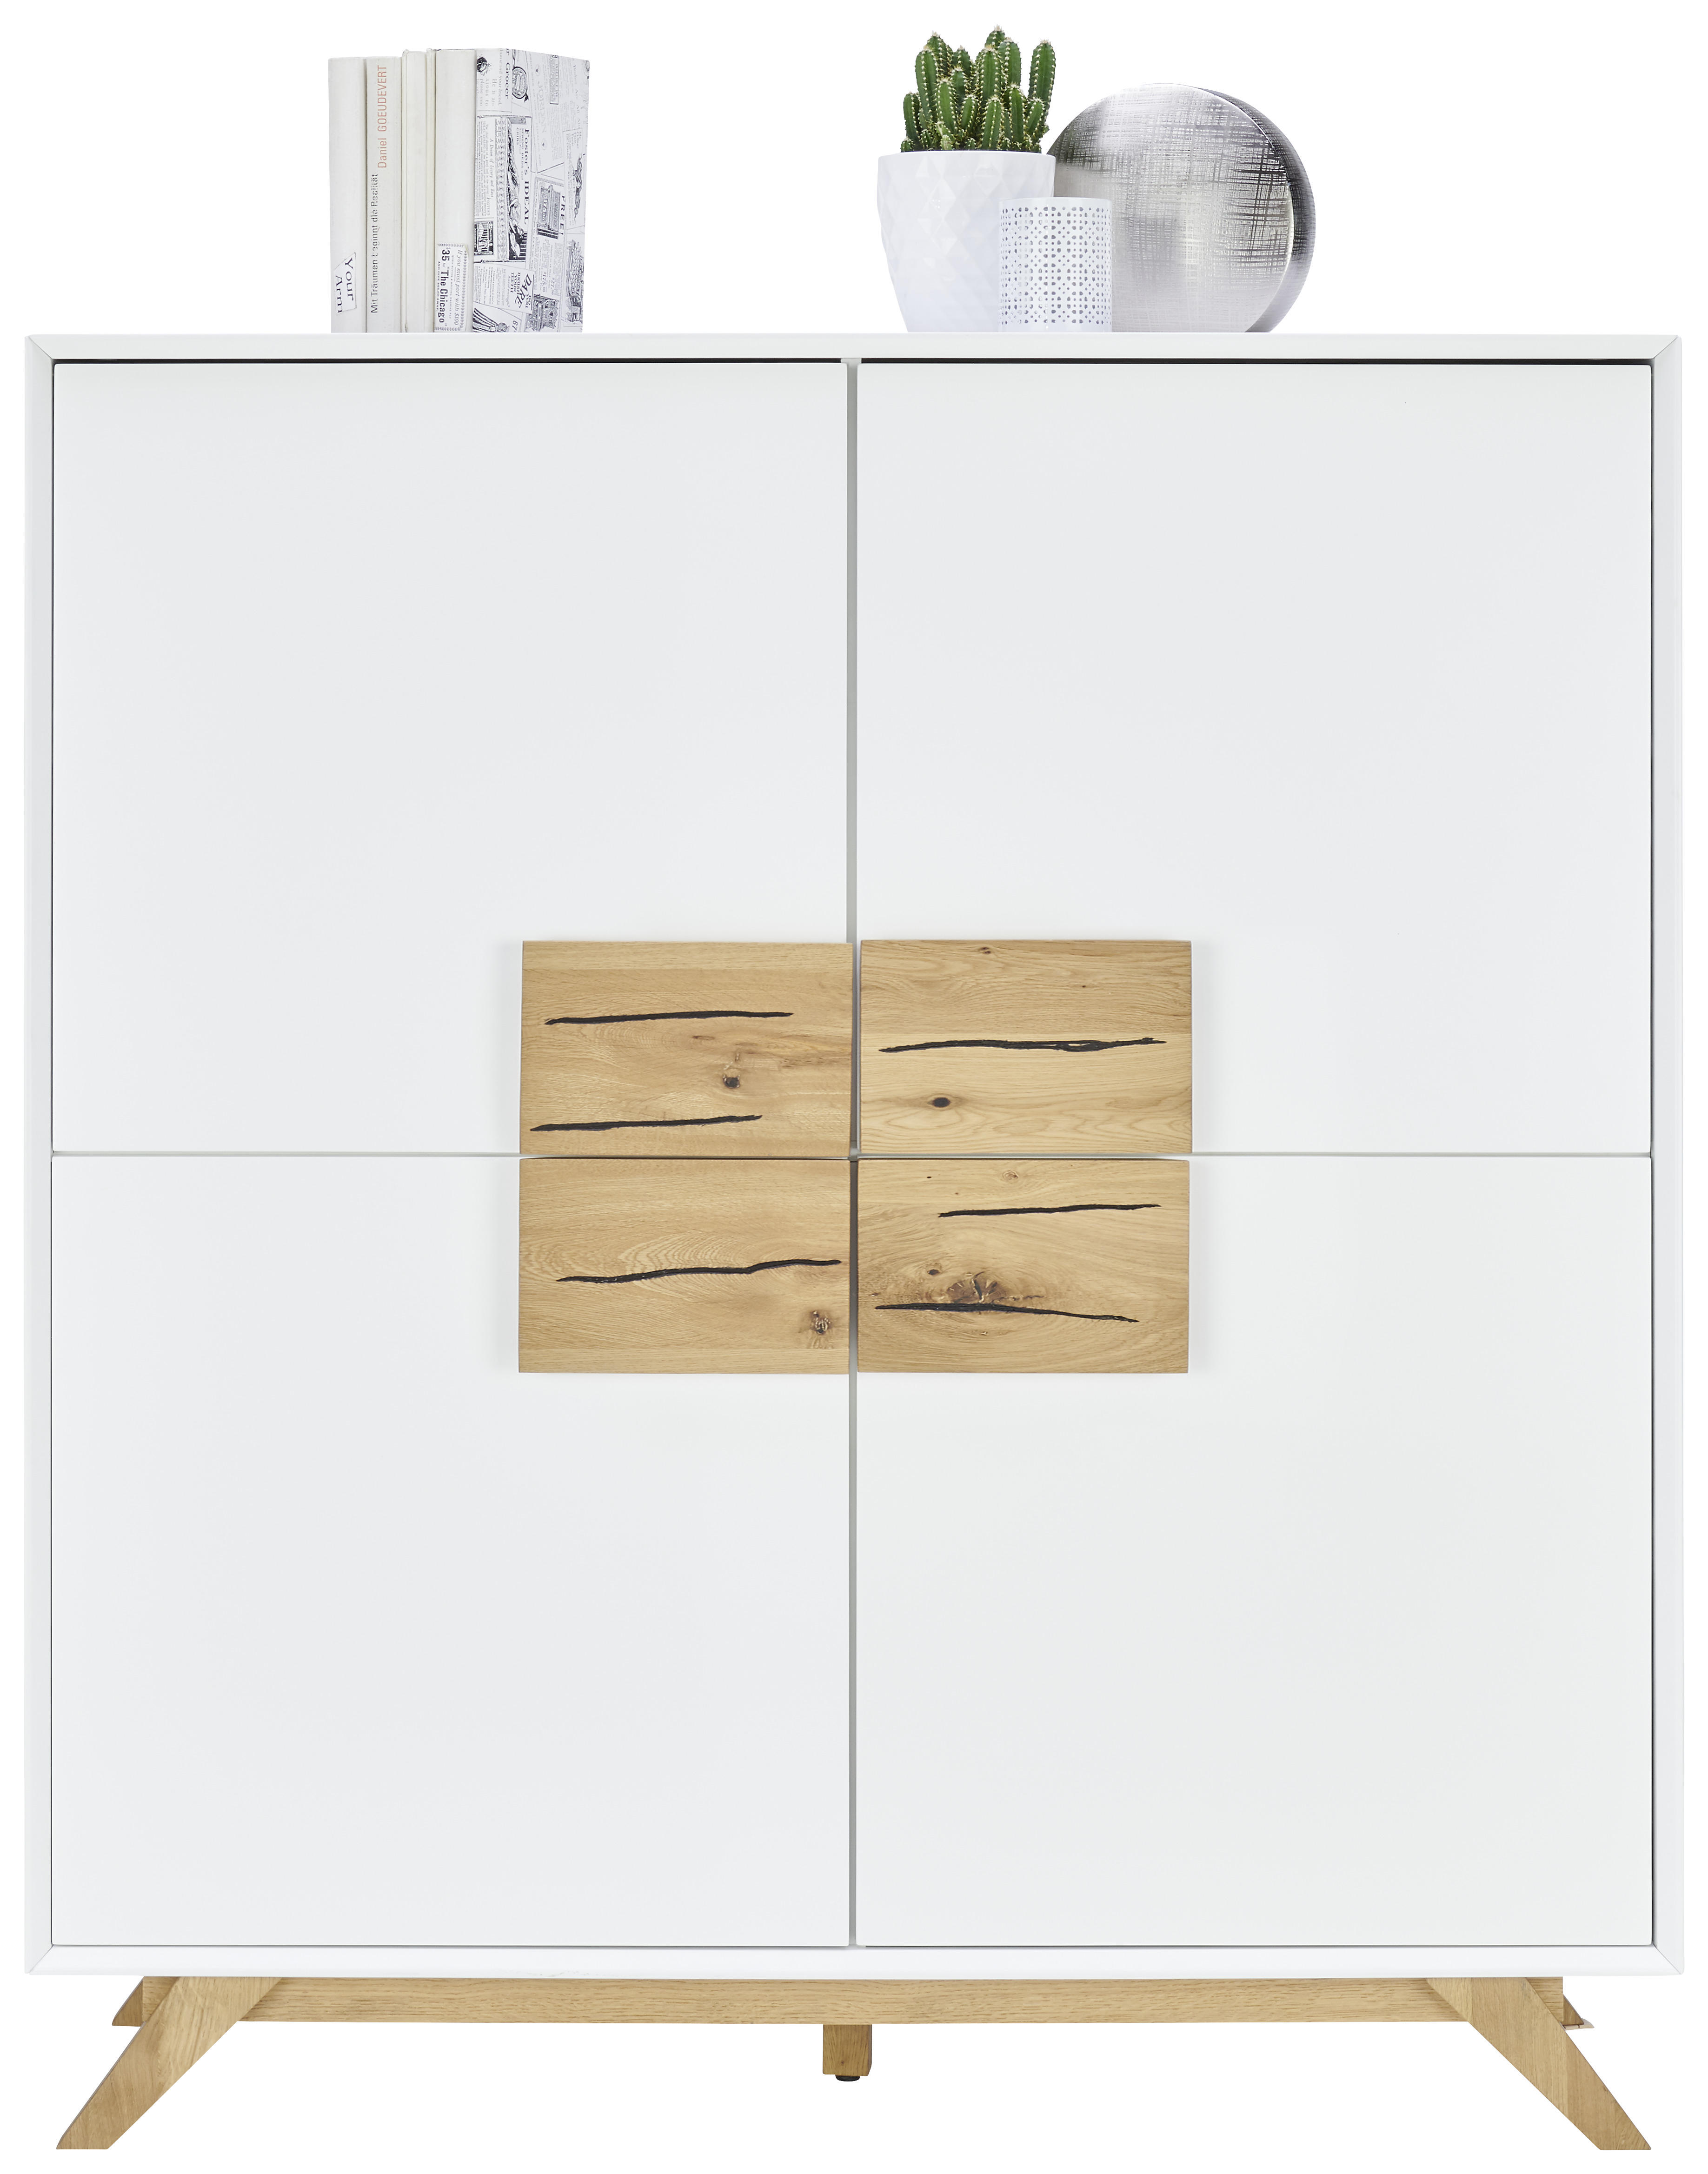 HIGHBOARD Eiche massiv Weiß, Eichefarben  - Eichefarben/Weiß, Design, Holz/Holzwerkstoff (120/133/40cm) - Xora